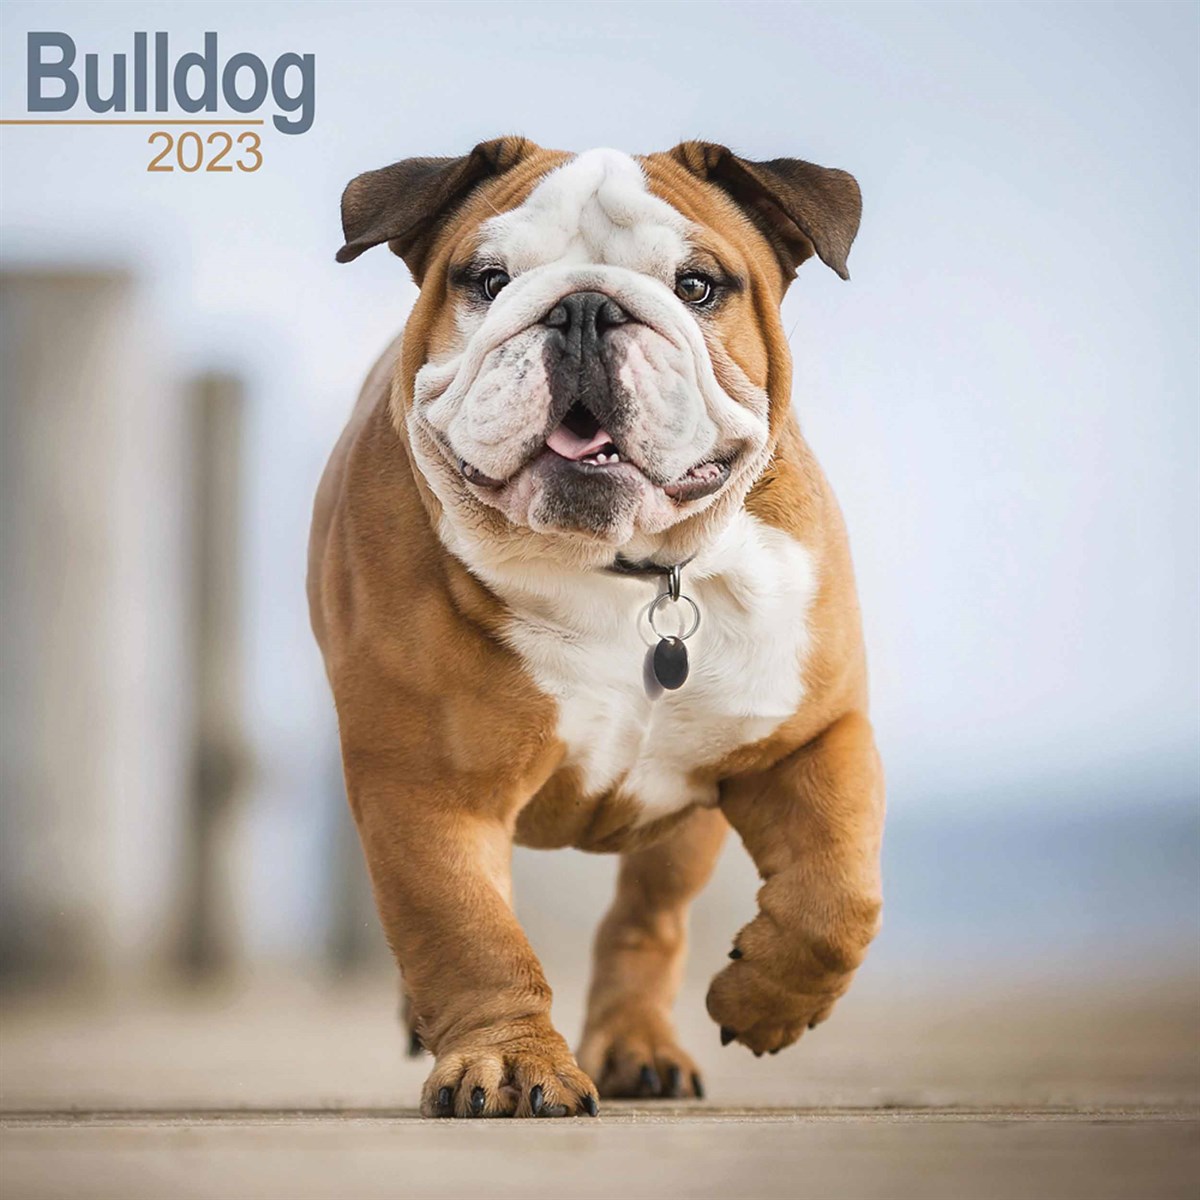 Bulldog 2023 Calendars